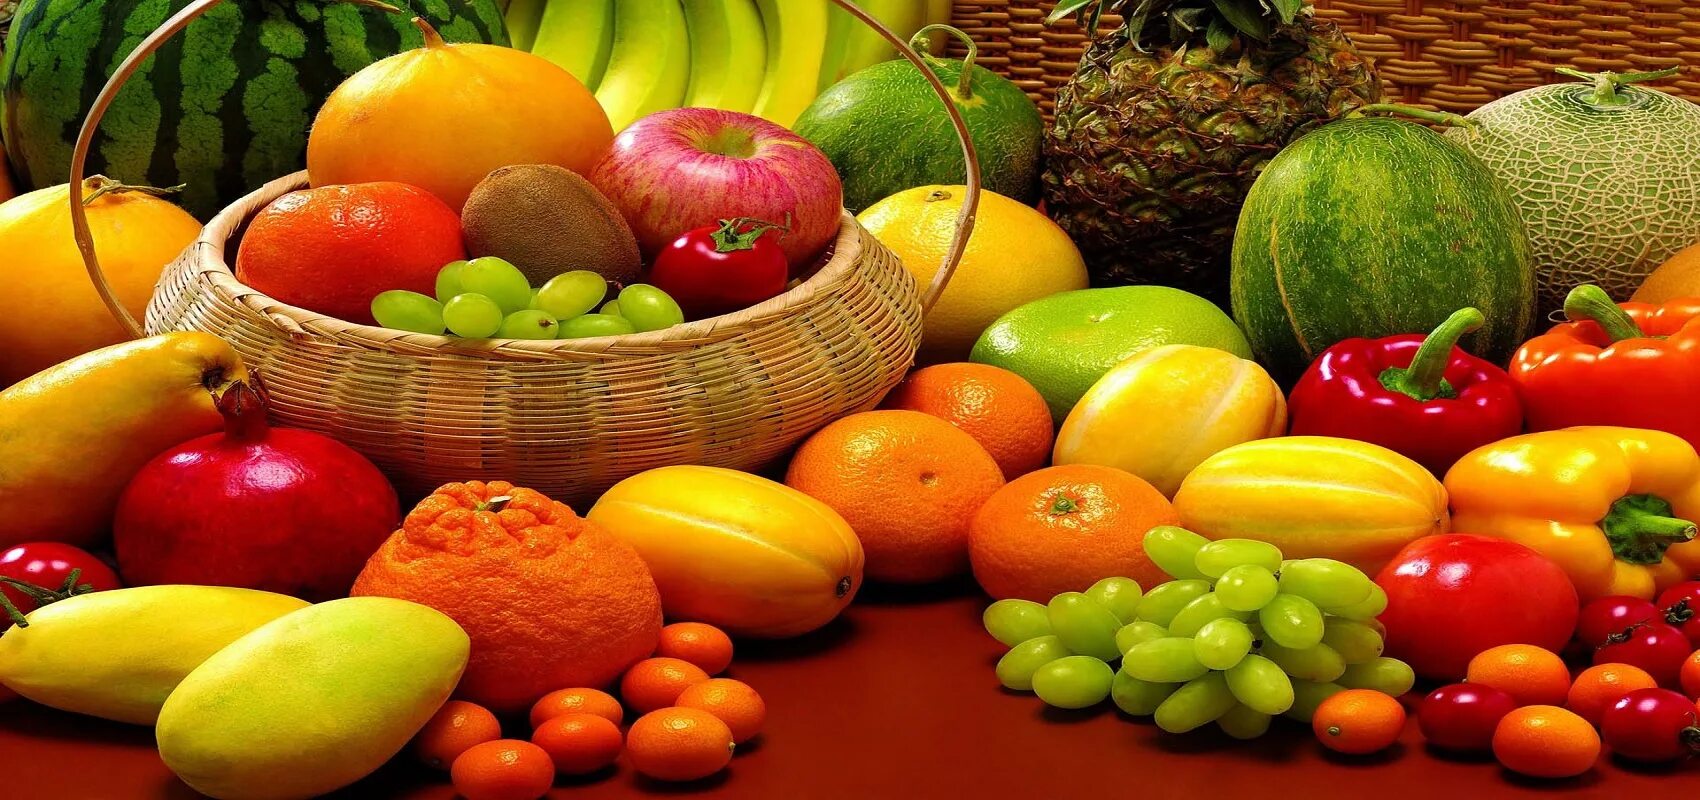 Для детского праздника закупили 26 кг фруктов. Овощи и фрукты. Овощи фрукты вывеска. Овощи фрукты баннер. Овощи фрукты реклама.